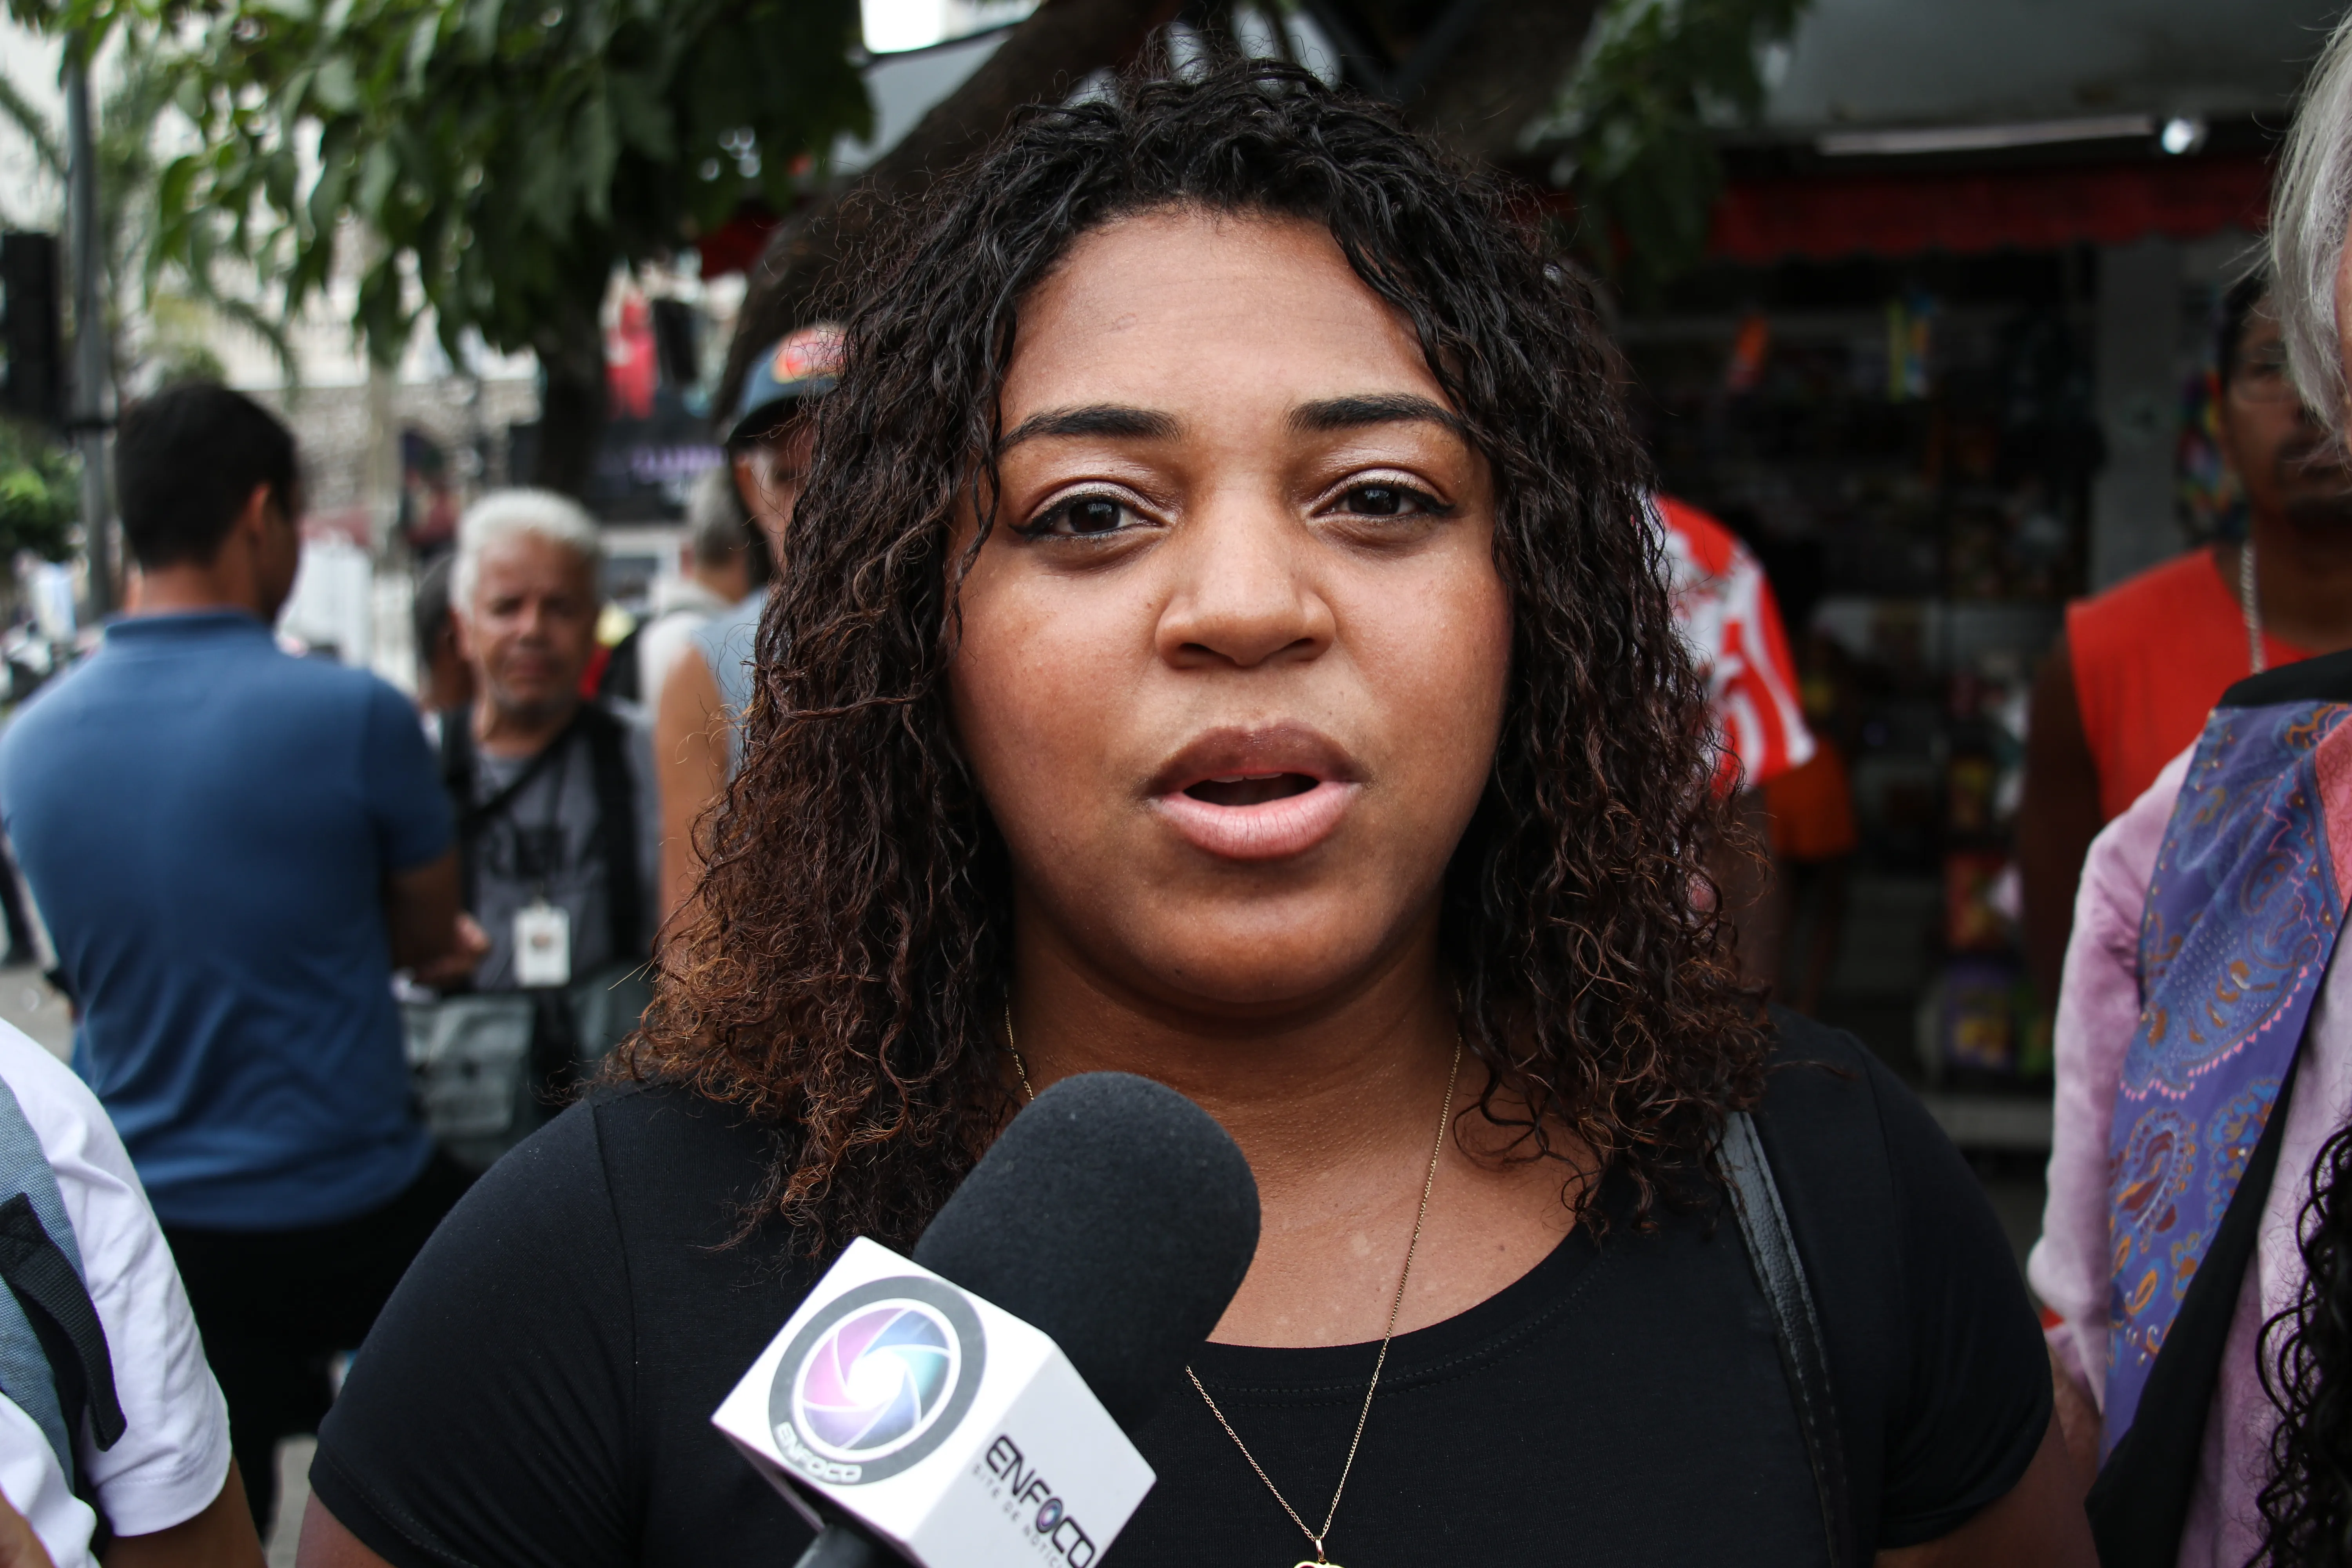 A filha de Jaine dos Santos, de 27 anos, sofreu racismo em Niterói